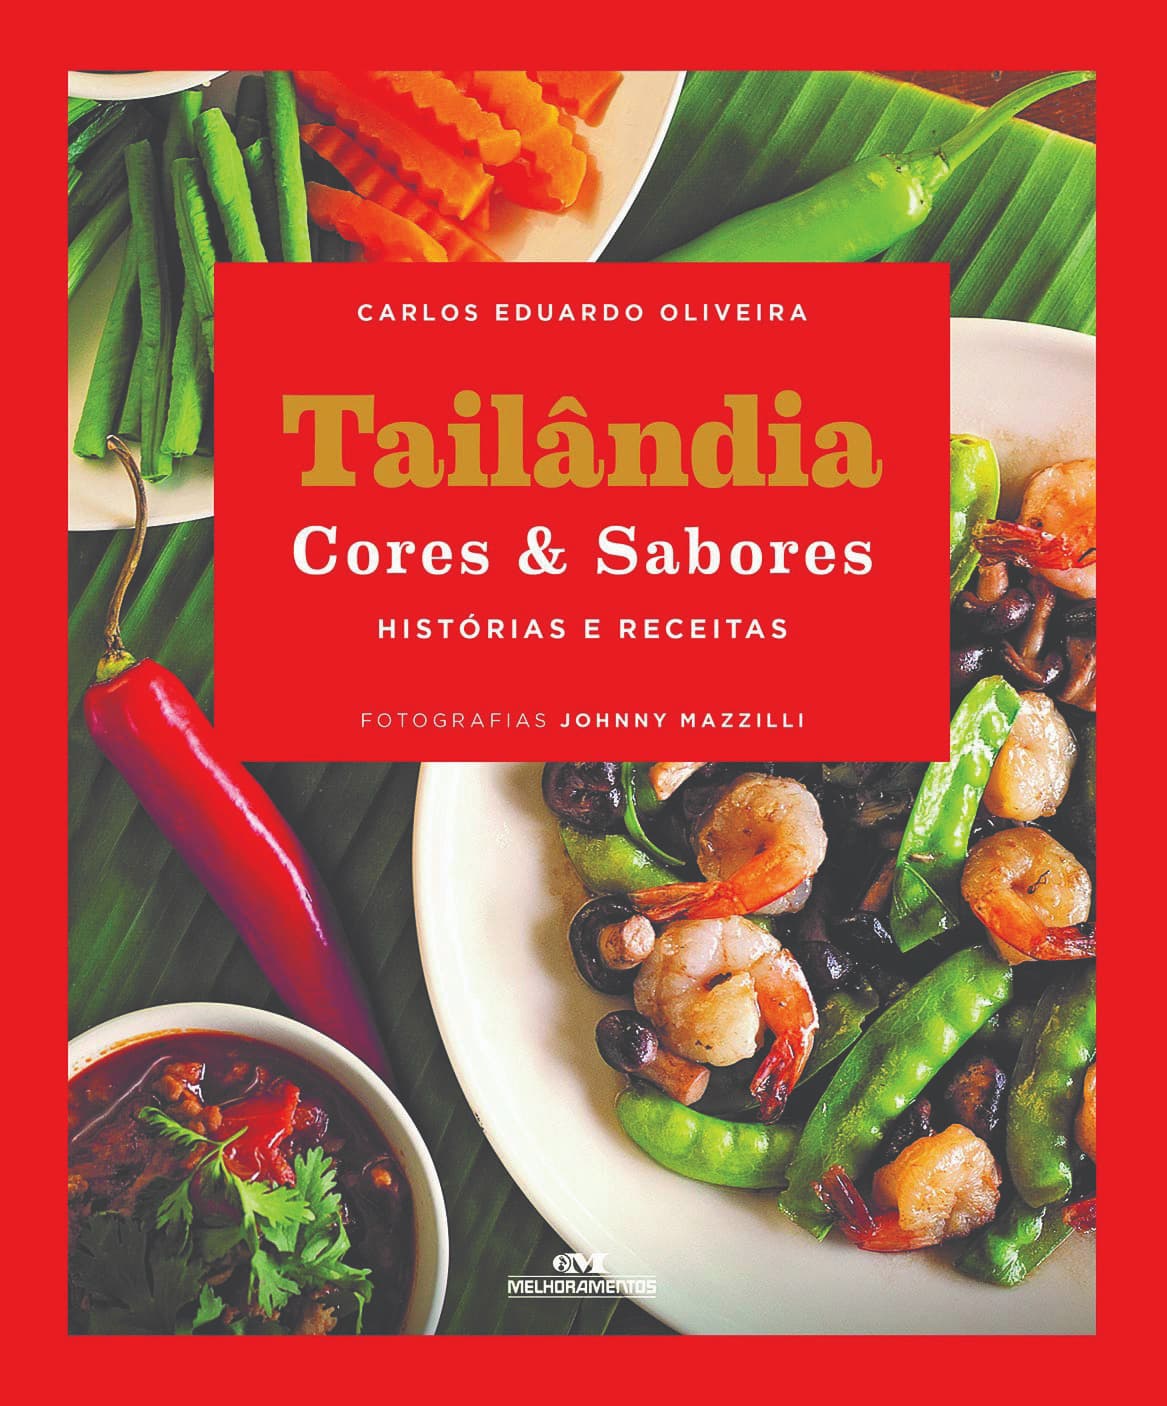 Livro “Tailândia Cores & Sabores – Histórias e Receitas” conta sobre a culinária tailandesa